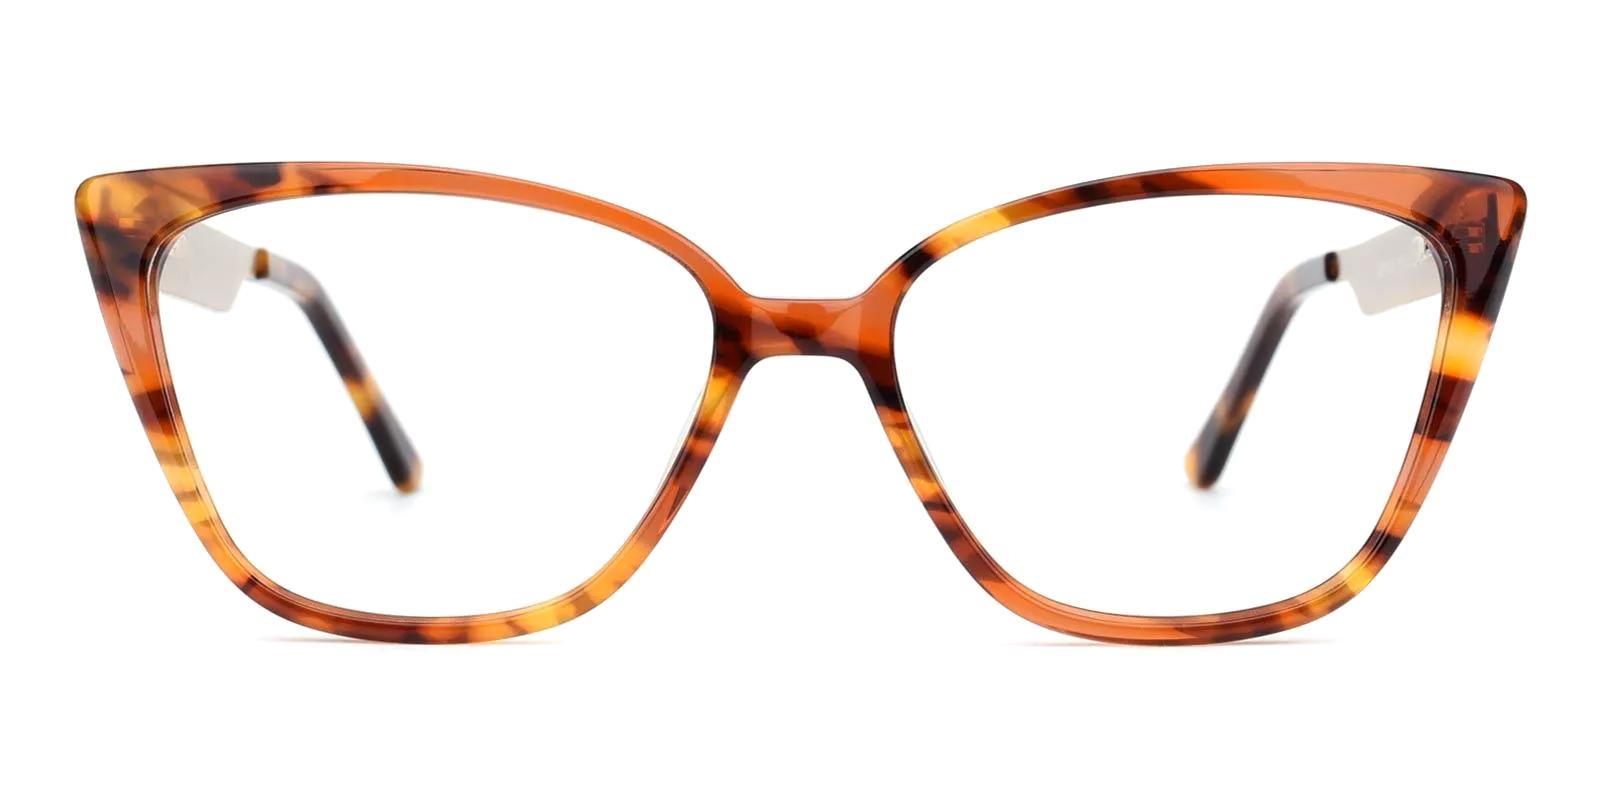 Fari Tortoise Acetate Eyeglasses , UniversalBridgeFit Frames from ABBE Glasses